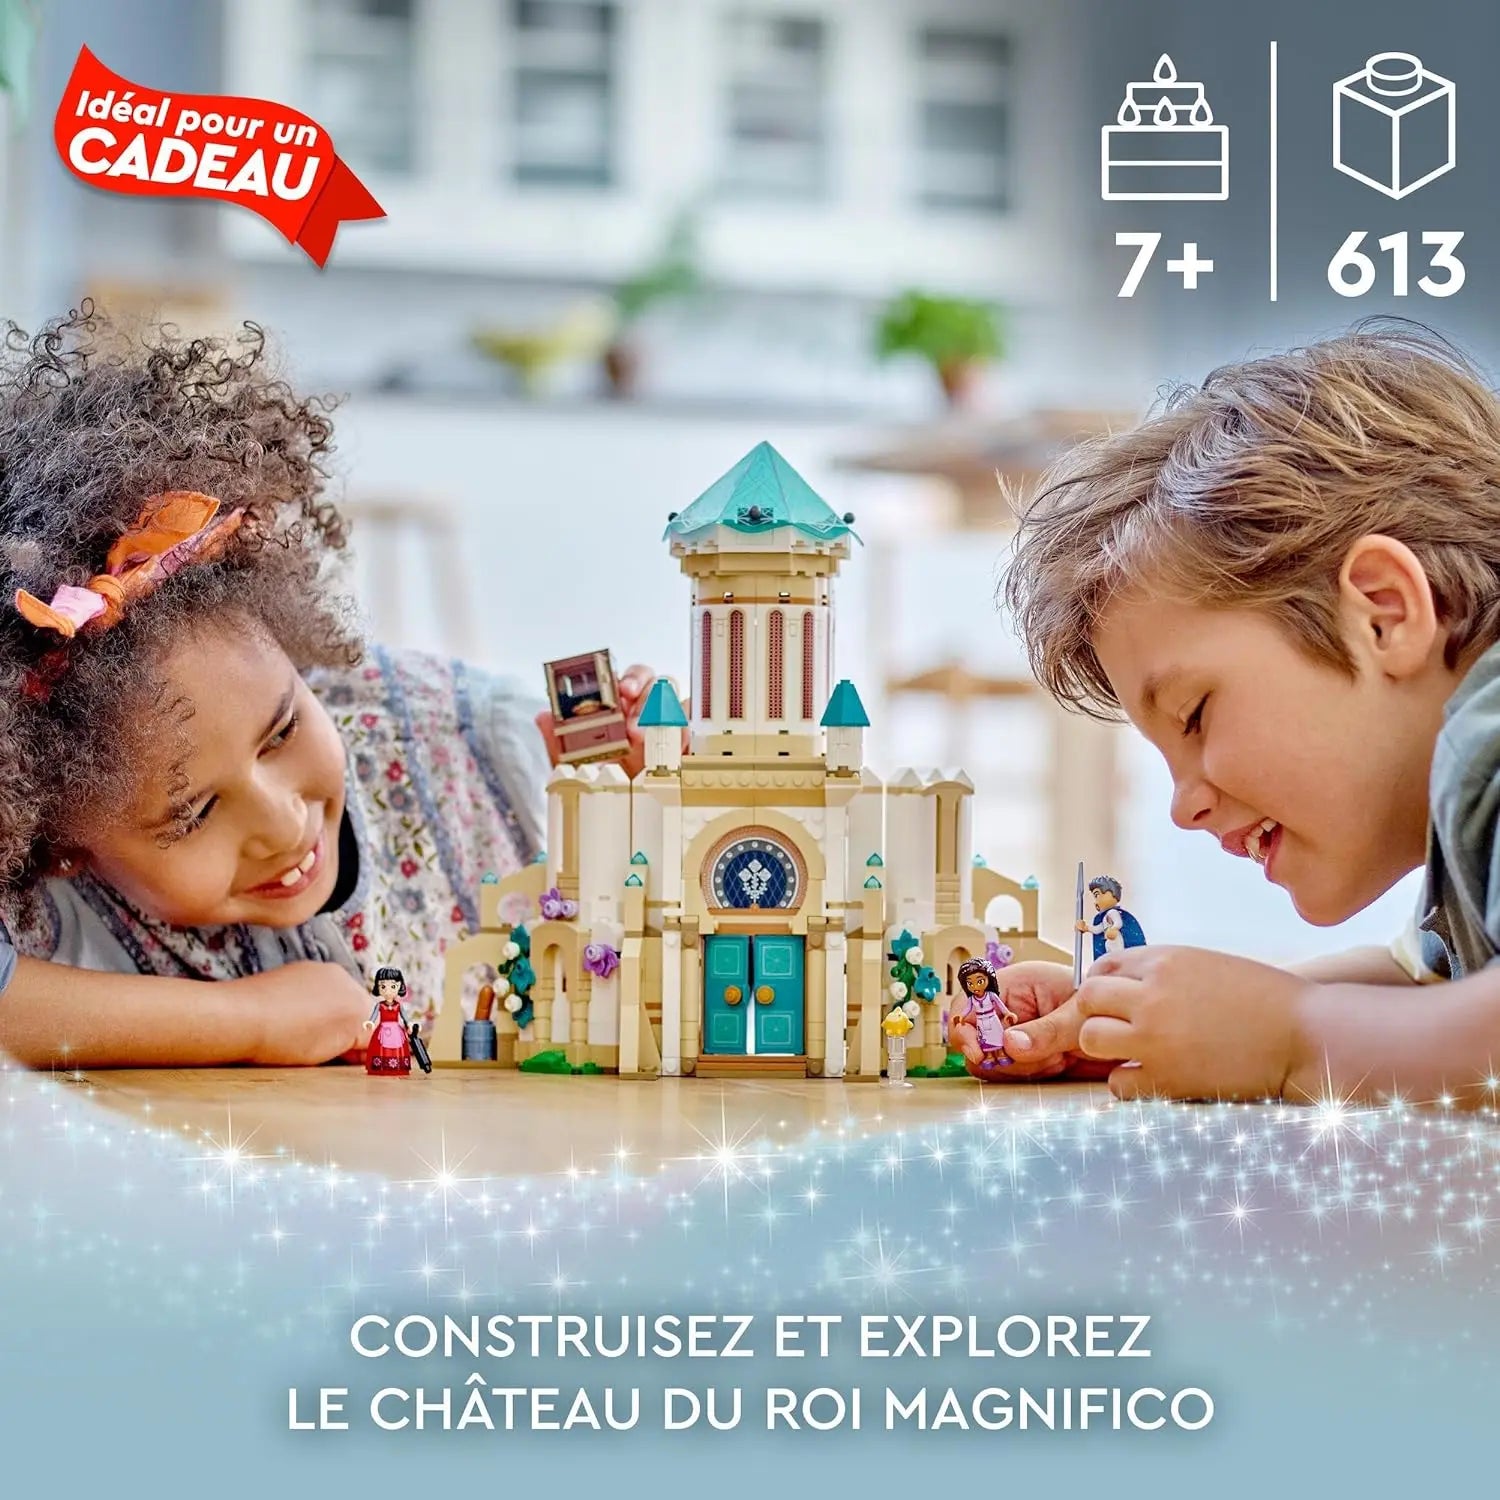 LEGO 43224 Disney Wish Le Château du Roi Magnifico, Jouet à Construire Tiré  du Film Wish avec Asha